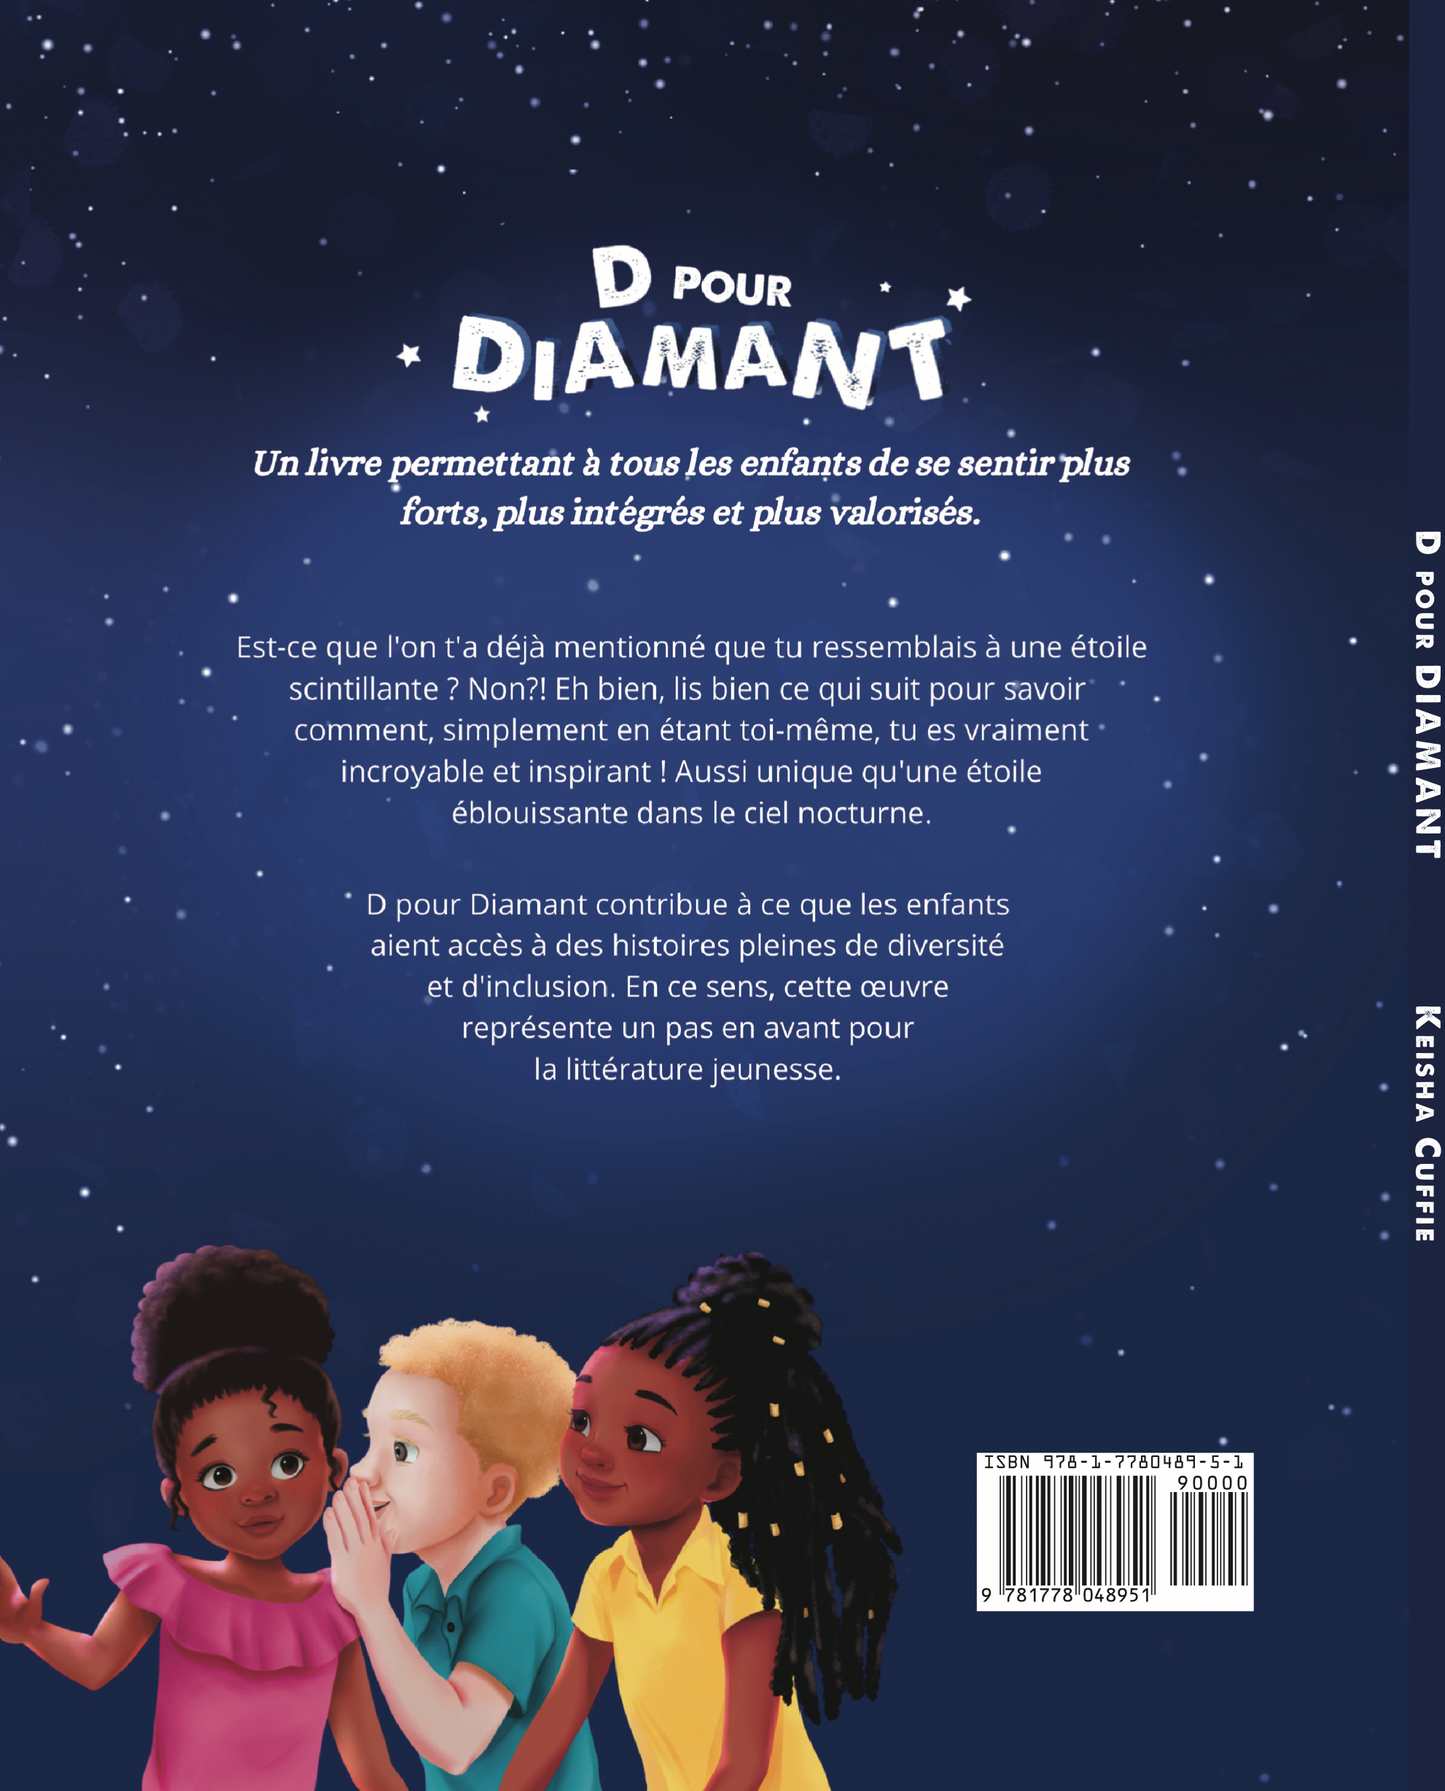 'D Pour Diamant' 1ère édition (FRANÇAIS) copie signée